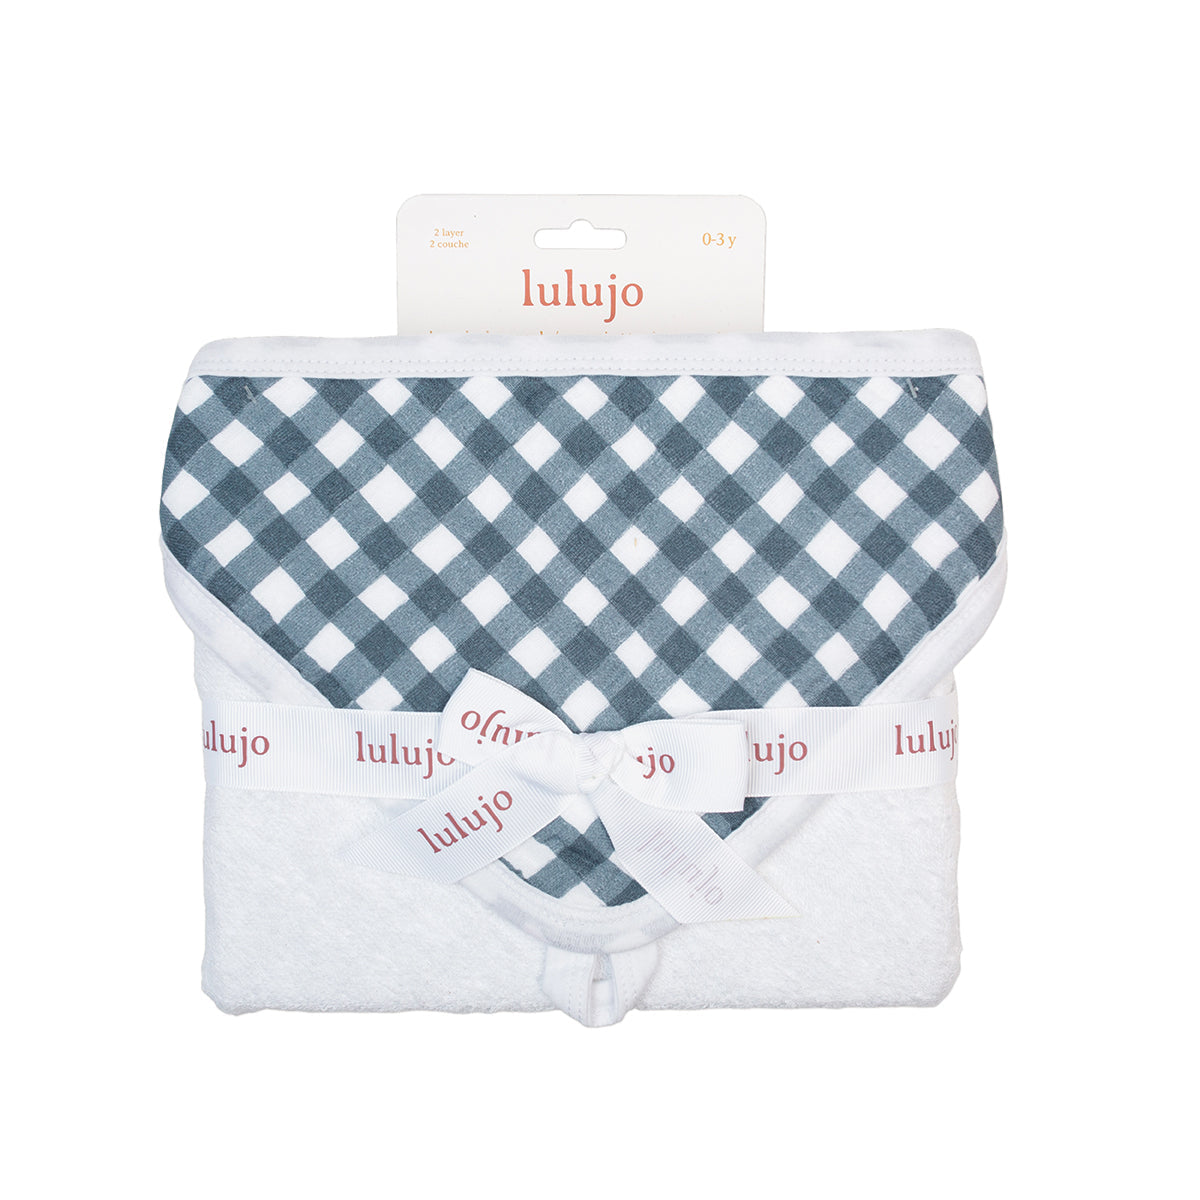 Lulujo Baby Hooded Towel - Navy Gingham